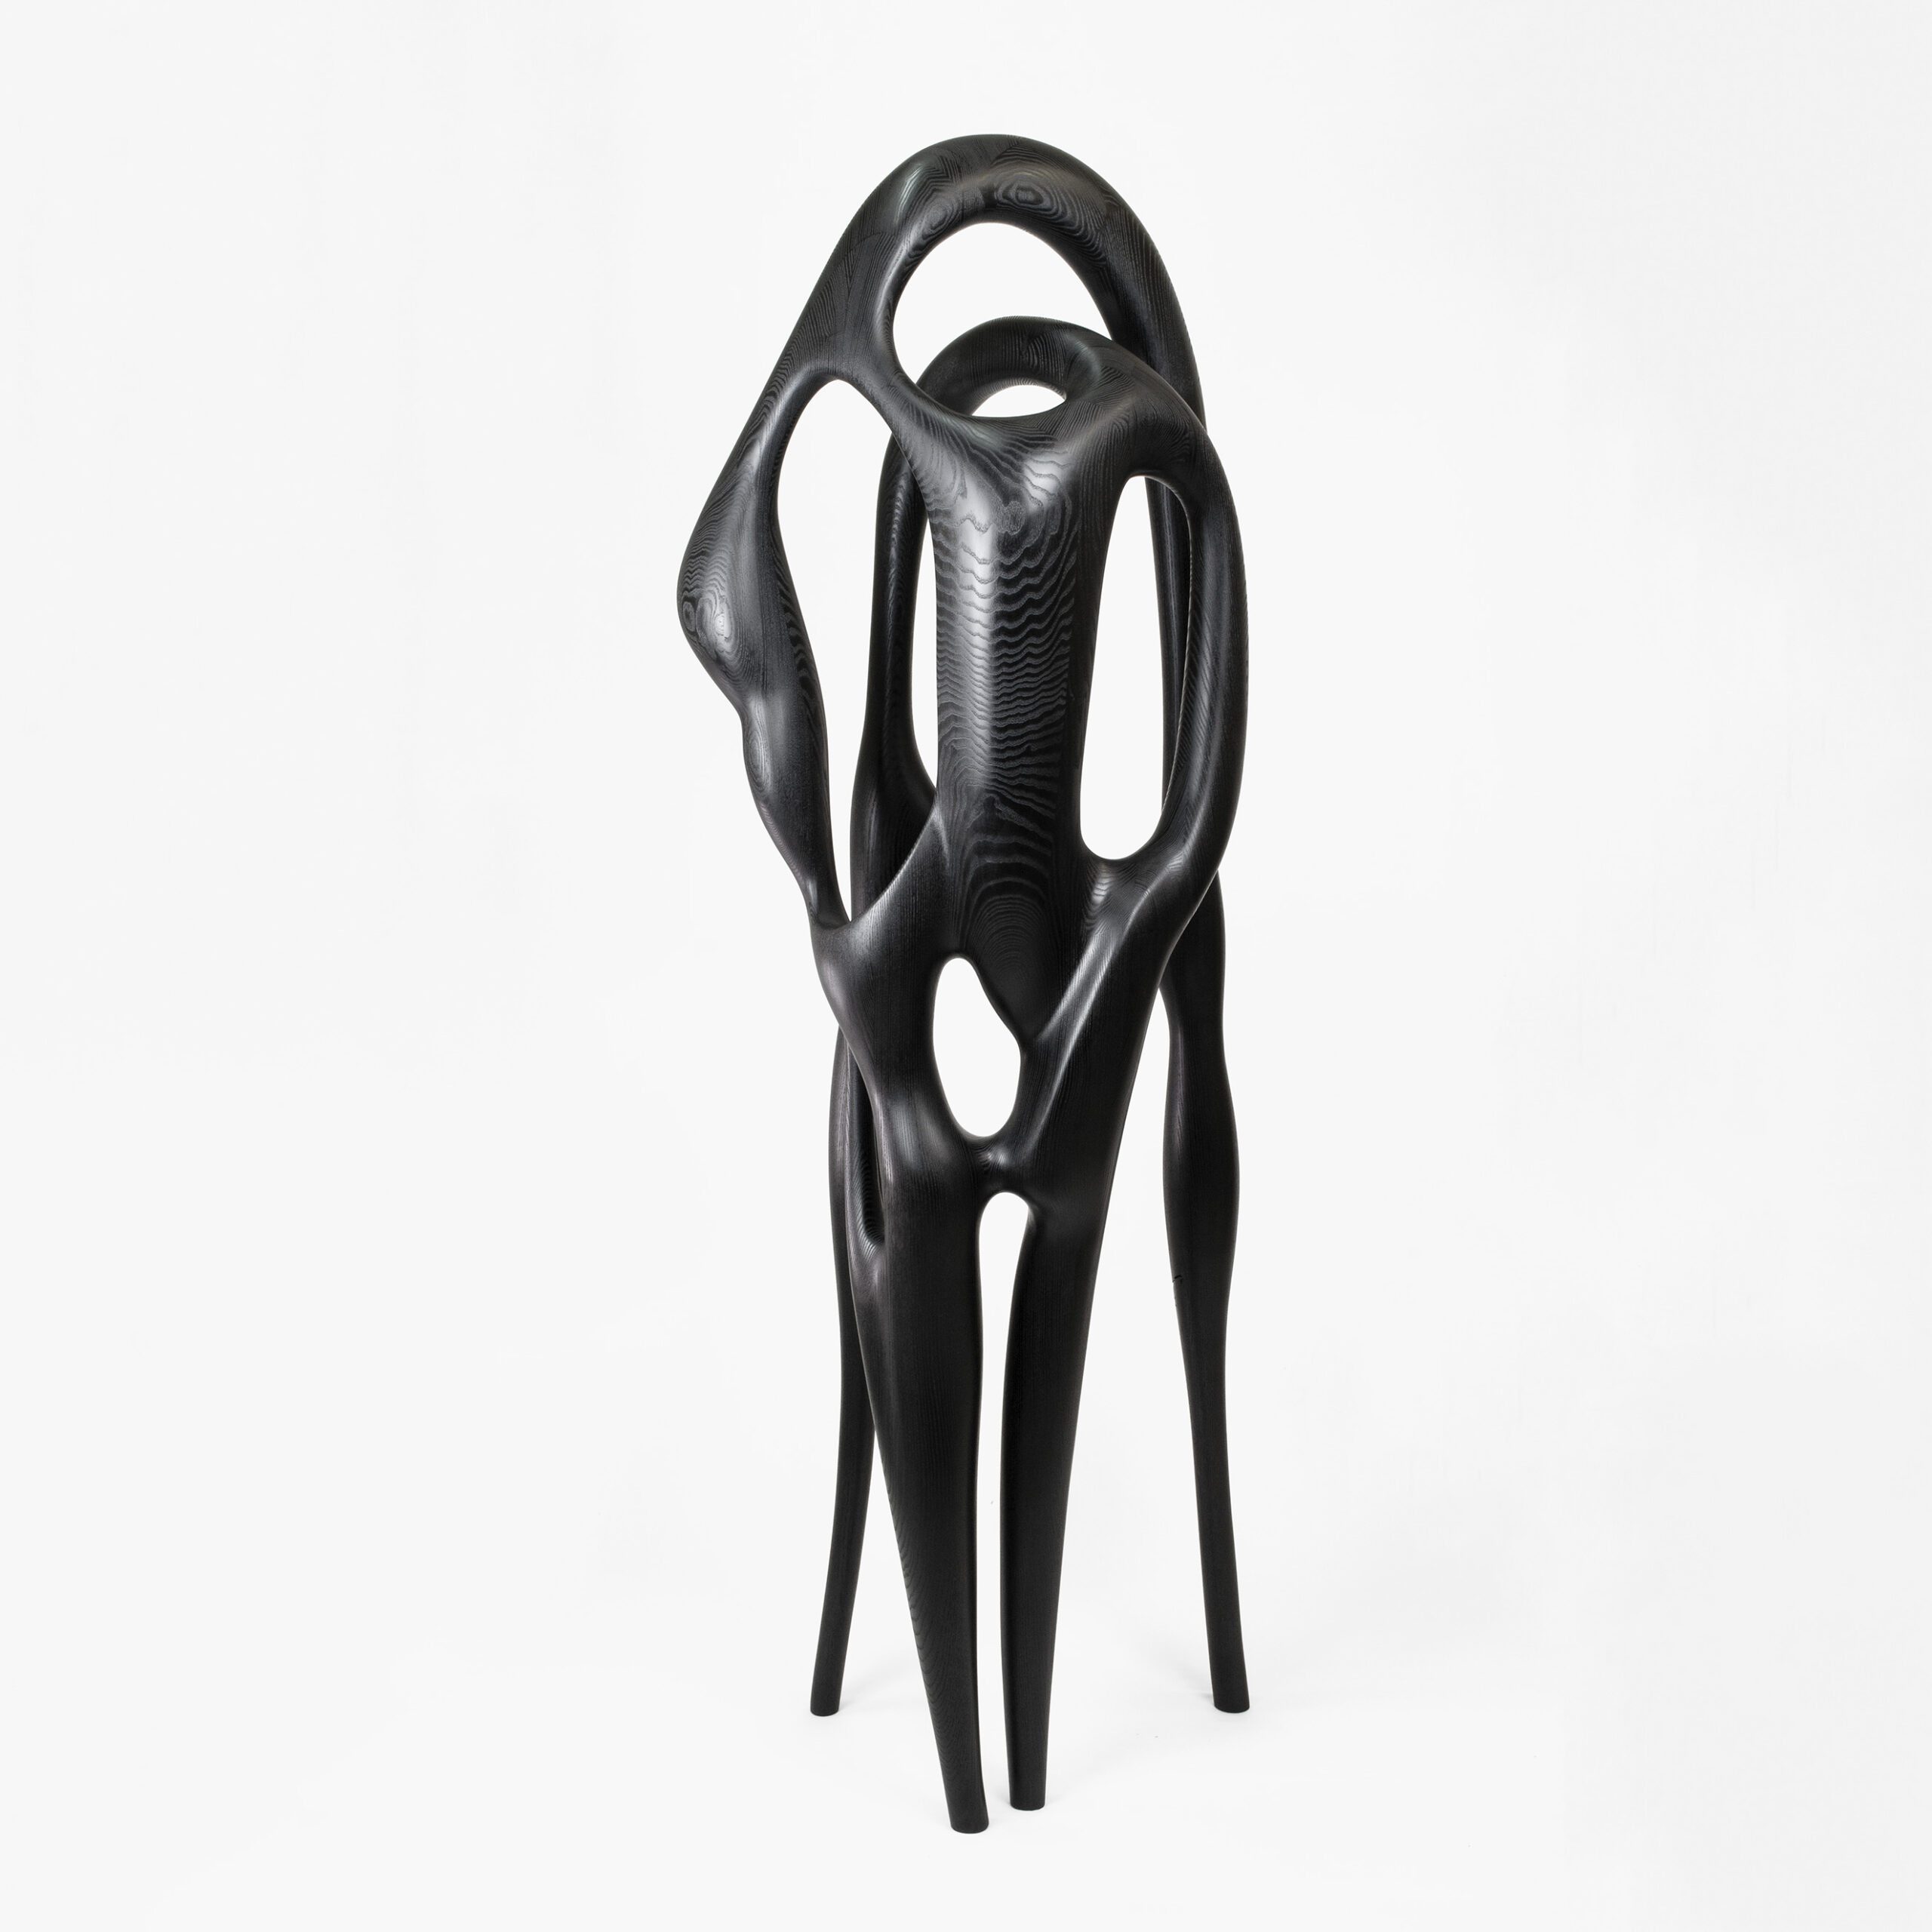 Art - contemporain - galerie d'art - galerie - bois - frêne teinté noir - Maxime Goléo - sculpture - organique - nature - design - designer - artiste